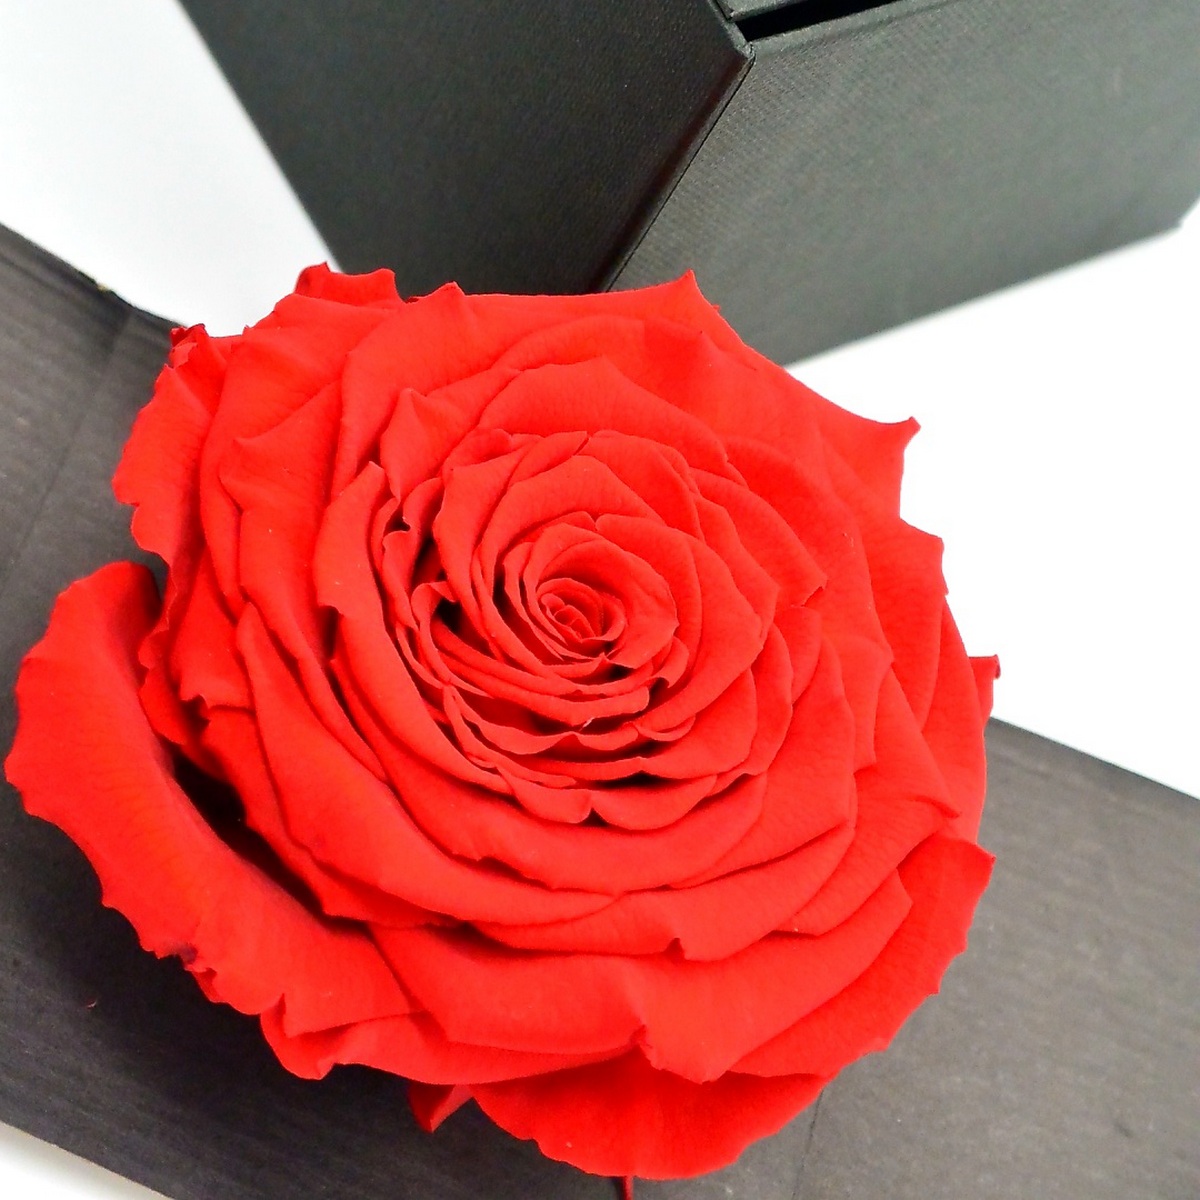 second flor rose eternelle rouge dans son ecrin rose des amoureux une idee cadeau saint valentin chez ugo et lea  (1)